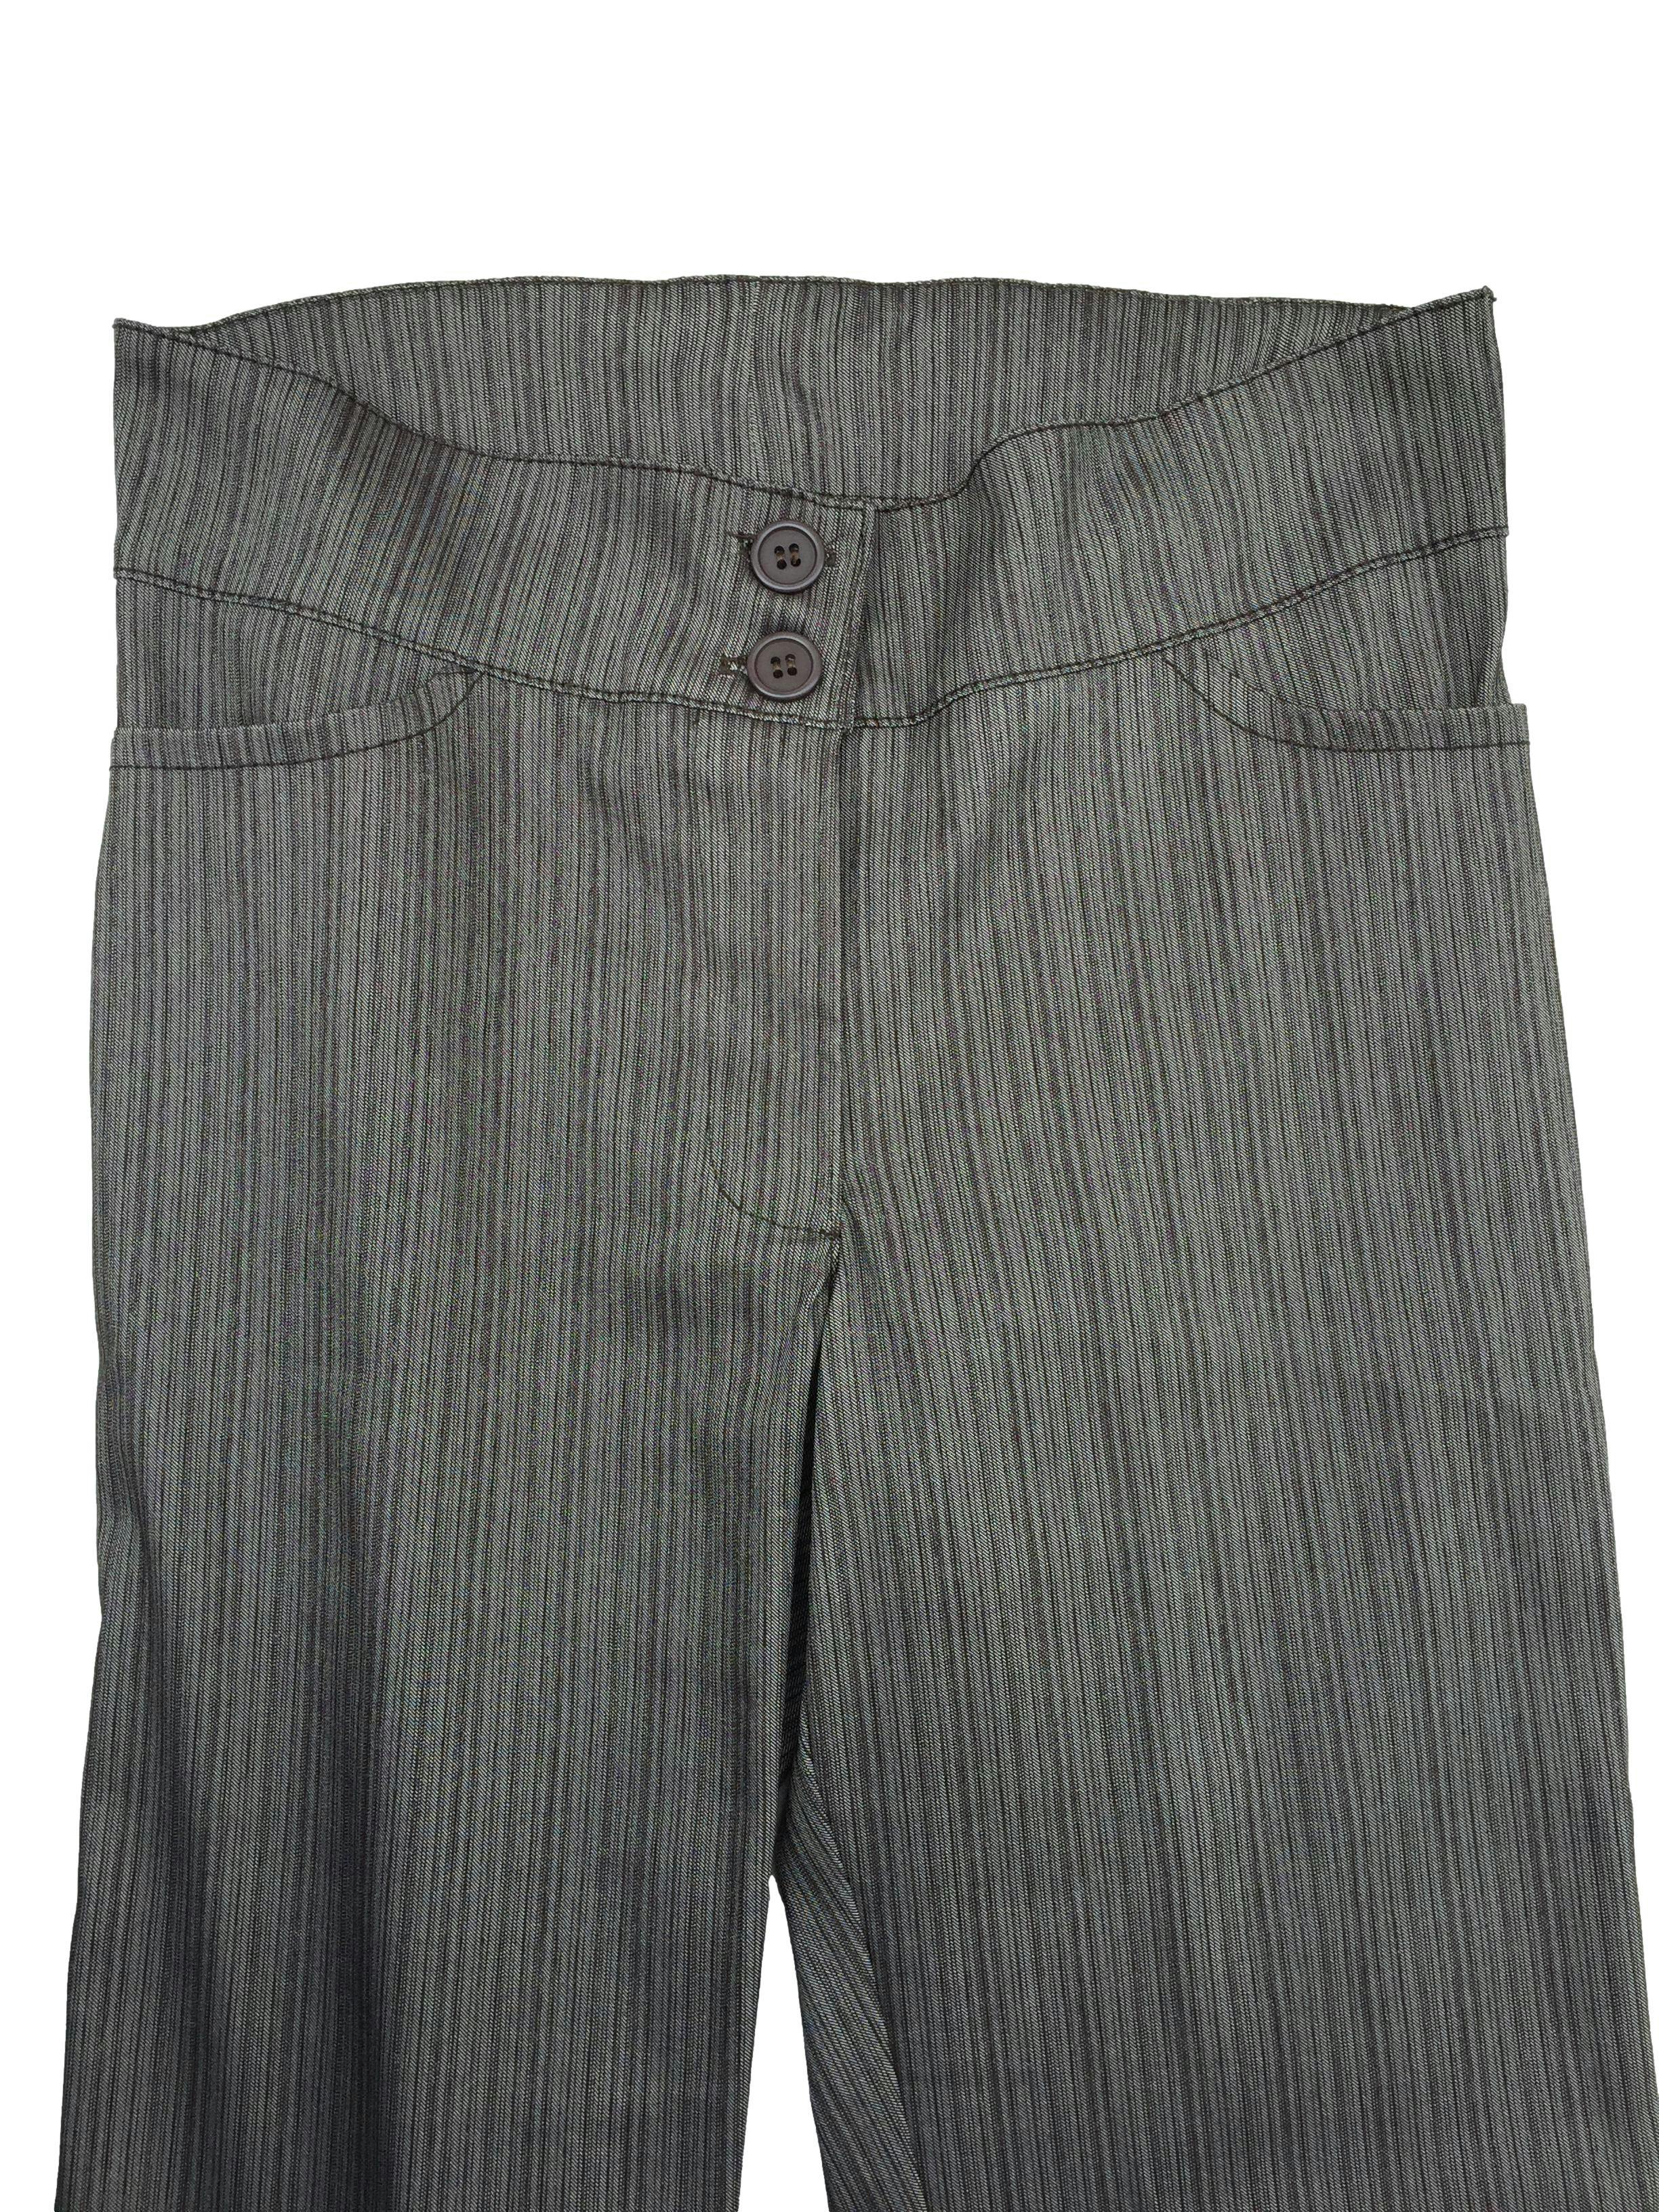 Pantalón stretch gris a rayas, ligeramente satinado, slim, con botones, cierre delanteros y bolsillos. Cintura 70cm Tiro 23cm Largo 98cm